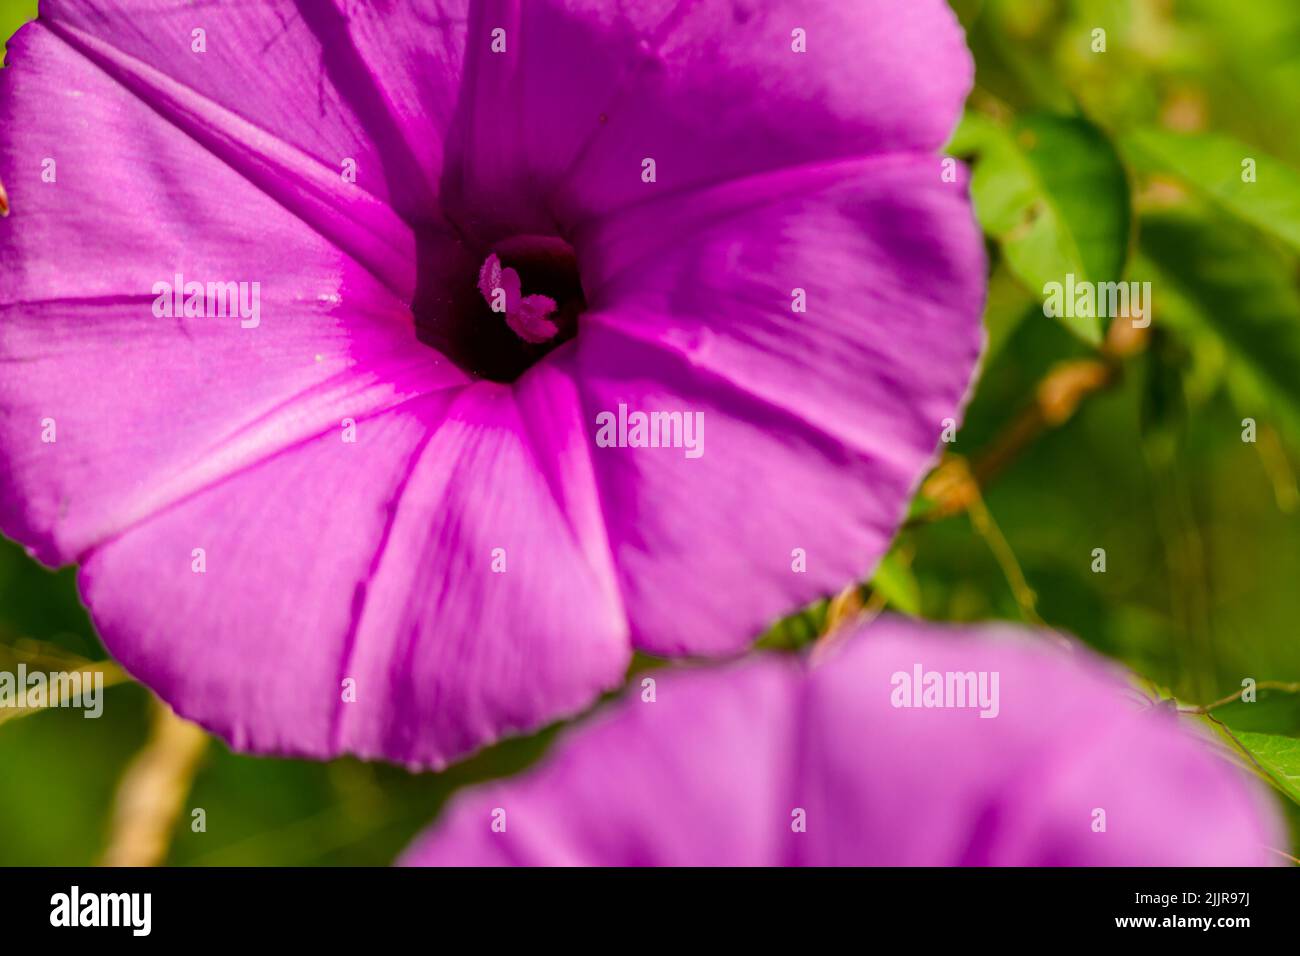 Ipomoea setifera Poir Blume, die in der Blüte ist, ist wie eine lila Trompete geformt, verschwommen grünen Laub Hintergrund Stockfoto